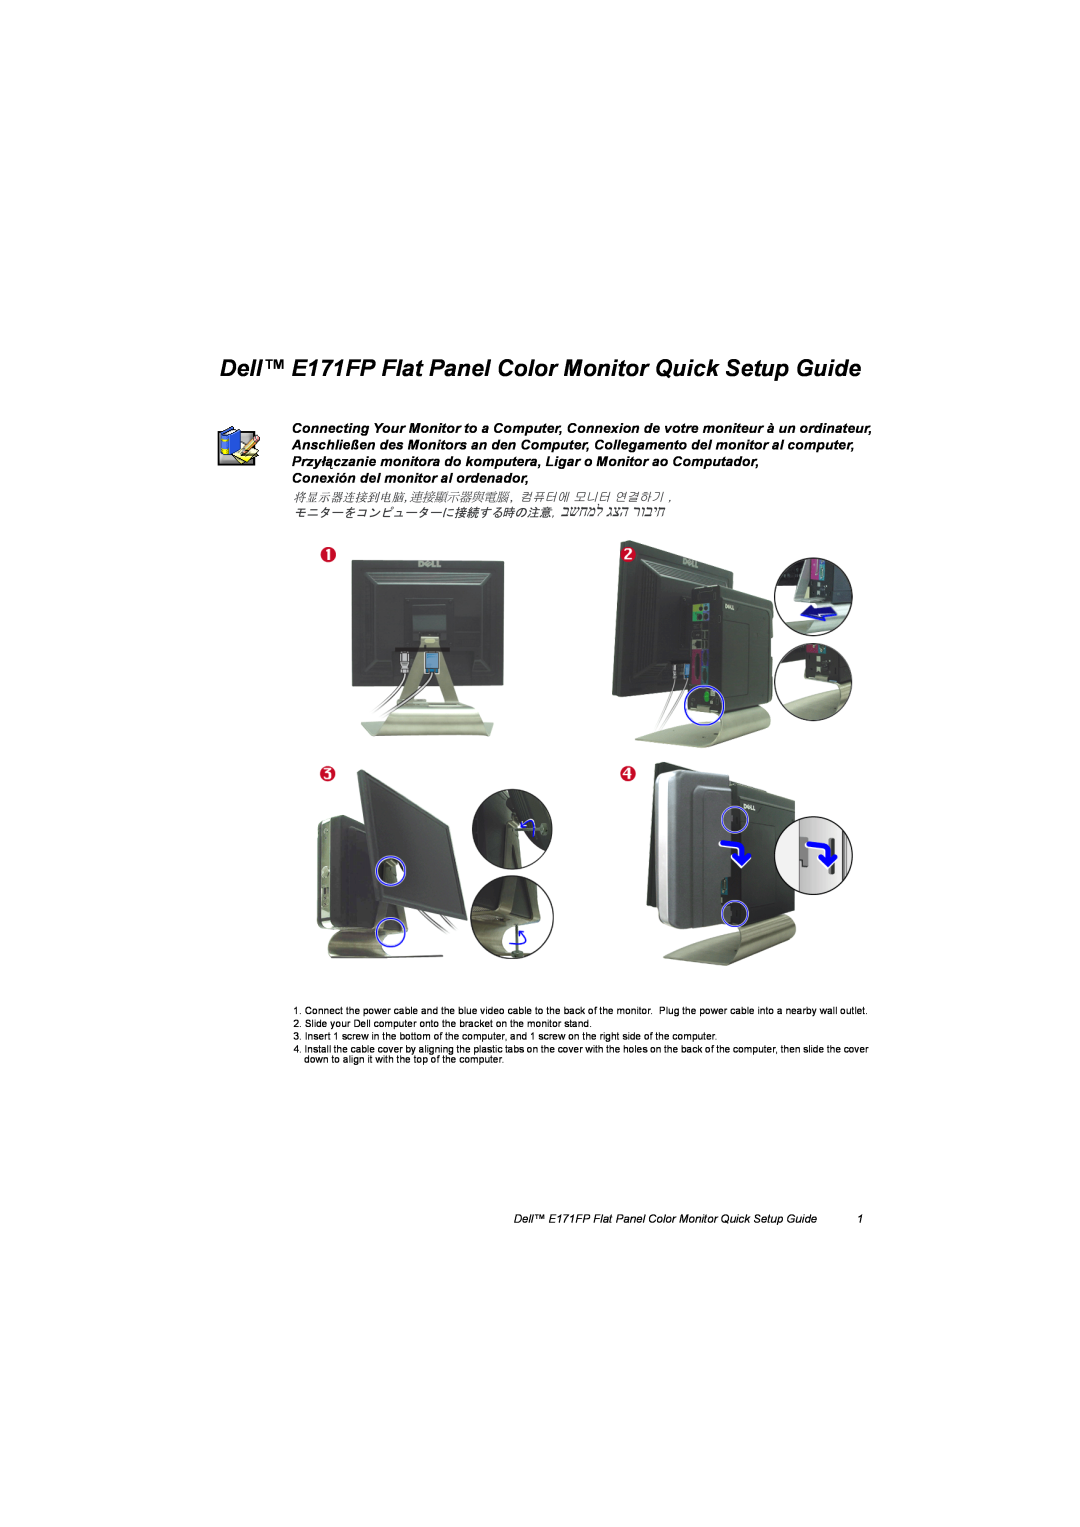 Dell BN68-00344E-00 manual Dell E171FP Flat Panel Color Monitor Quick Setup Guide 